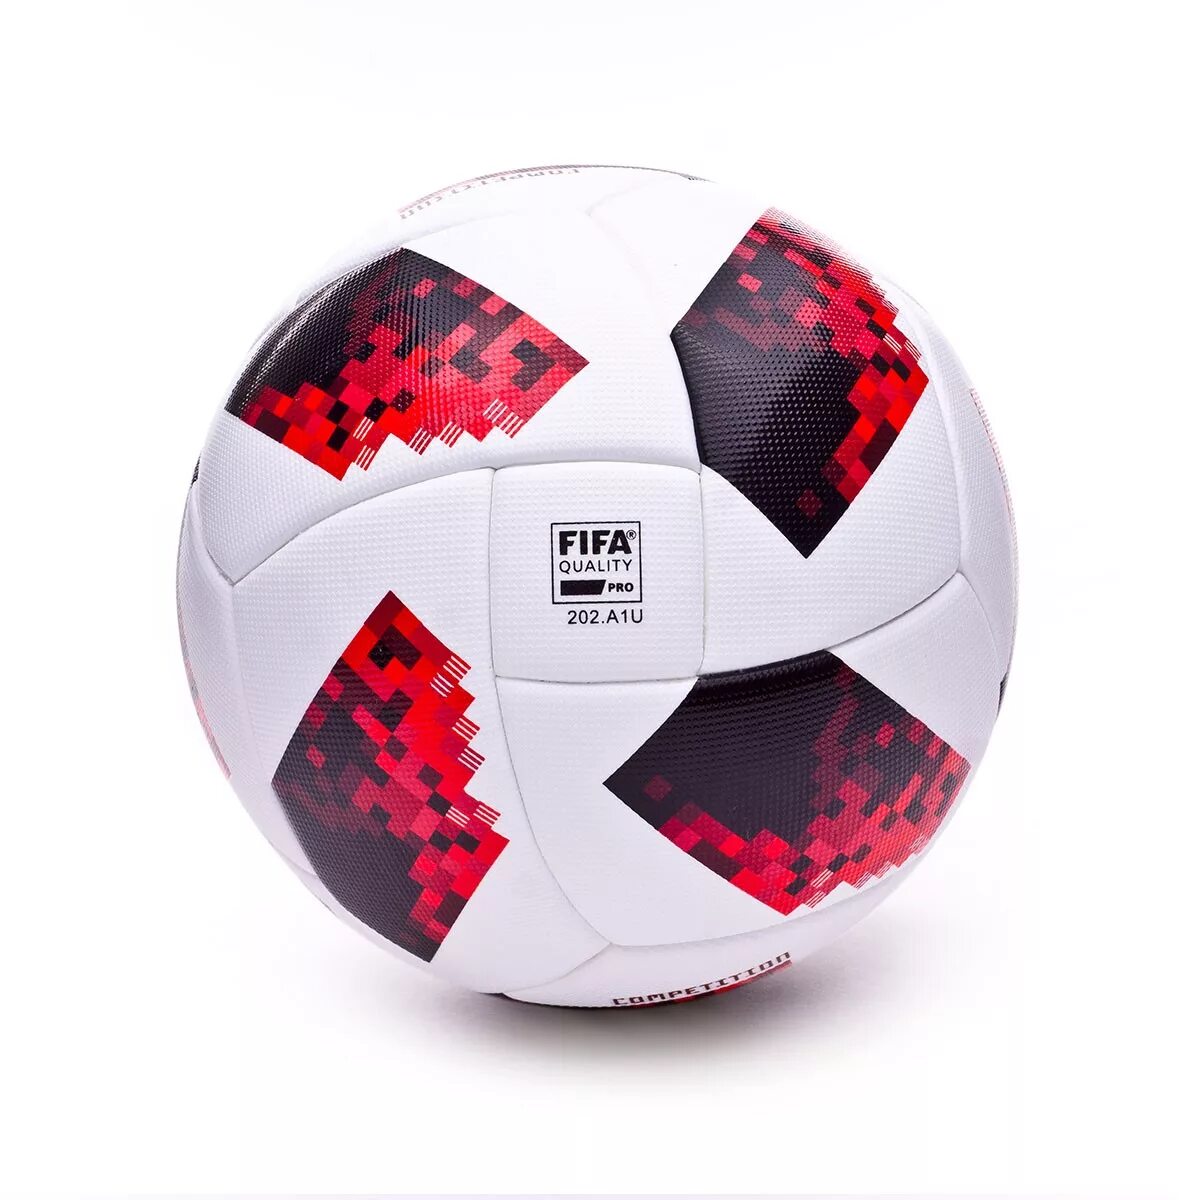 Adidas FIFA quality Pro 202. A1l. Adidas Telstar FIFA бесшовный. Мяч футбольный адидас ФИФА quality Pro 202.a1p. Адидас FIFA quality Pro.